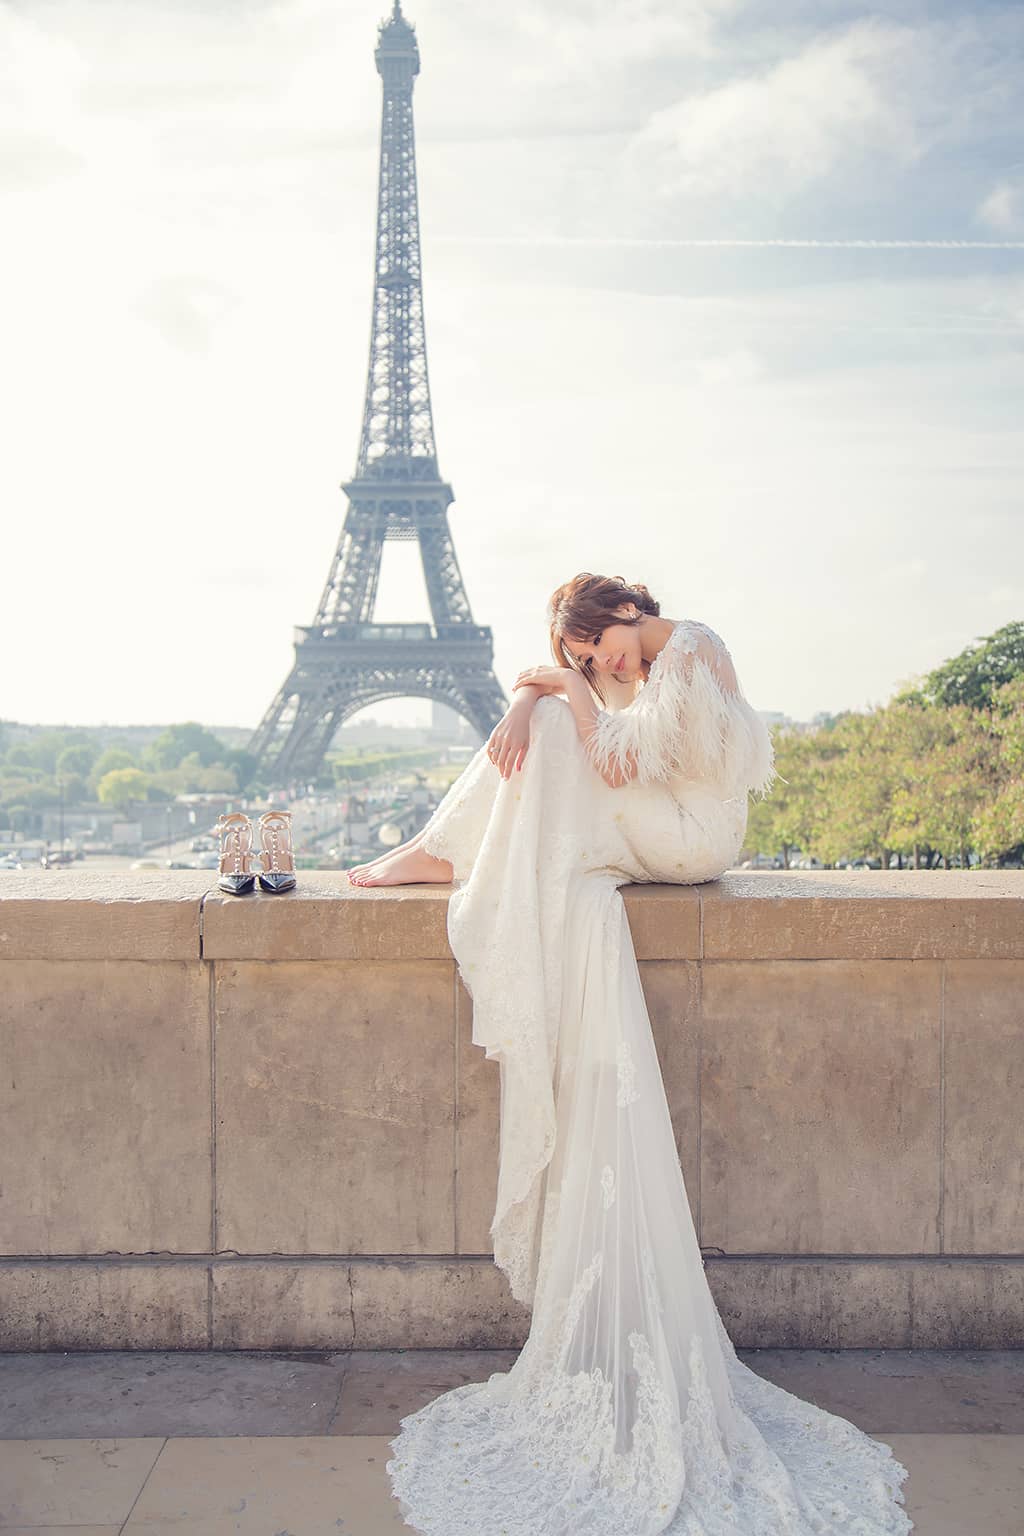 巴黎婚紗,海外婚紗,歐洲婚紗,海外婚紗巴黎,巴黎婚紗攝影,巴黎鐵塔,法國巴黎婚紗,海外婚紗